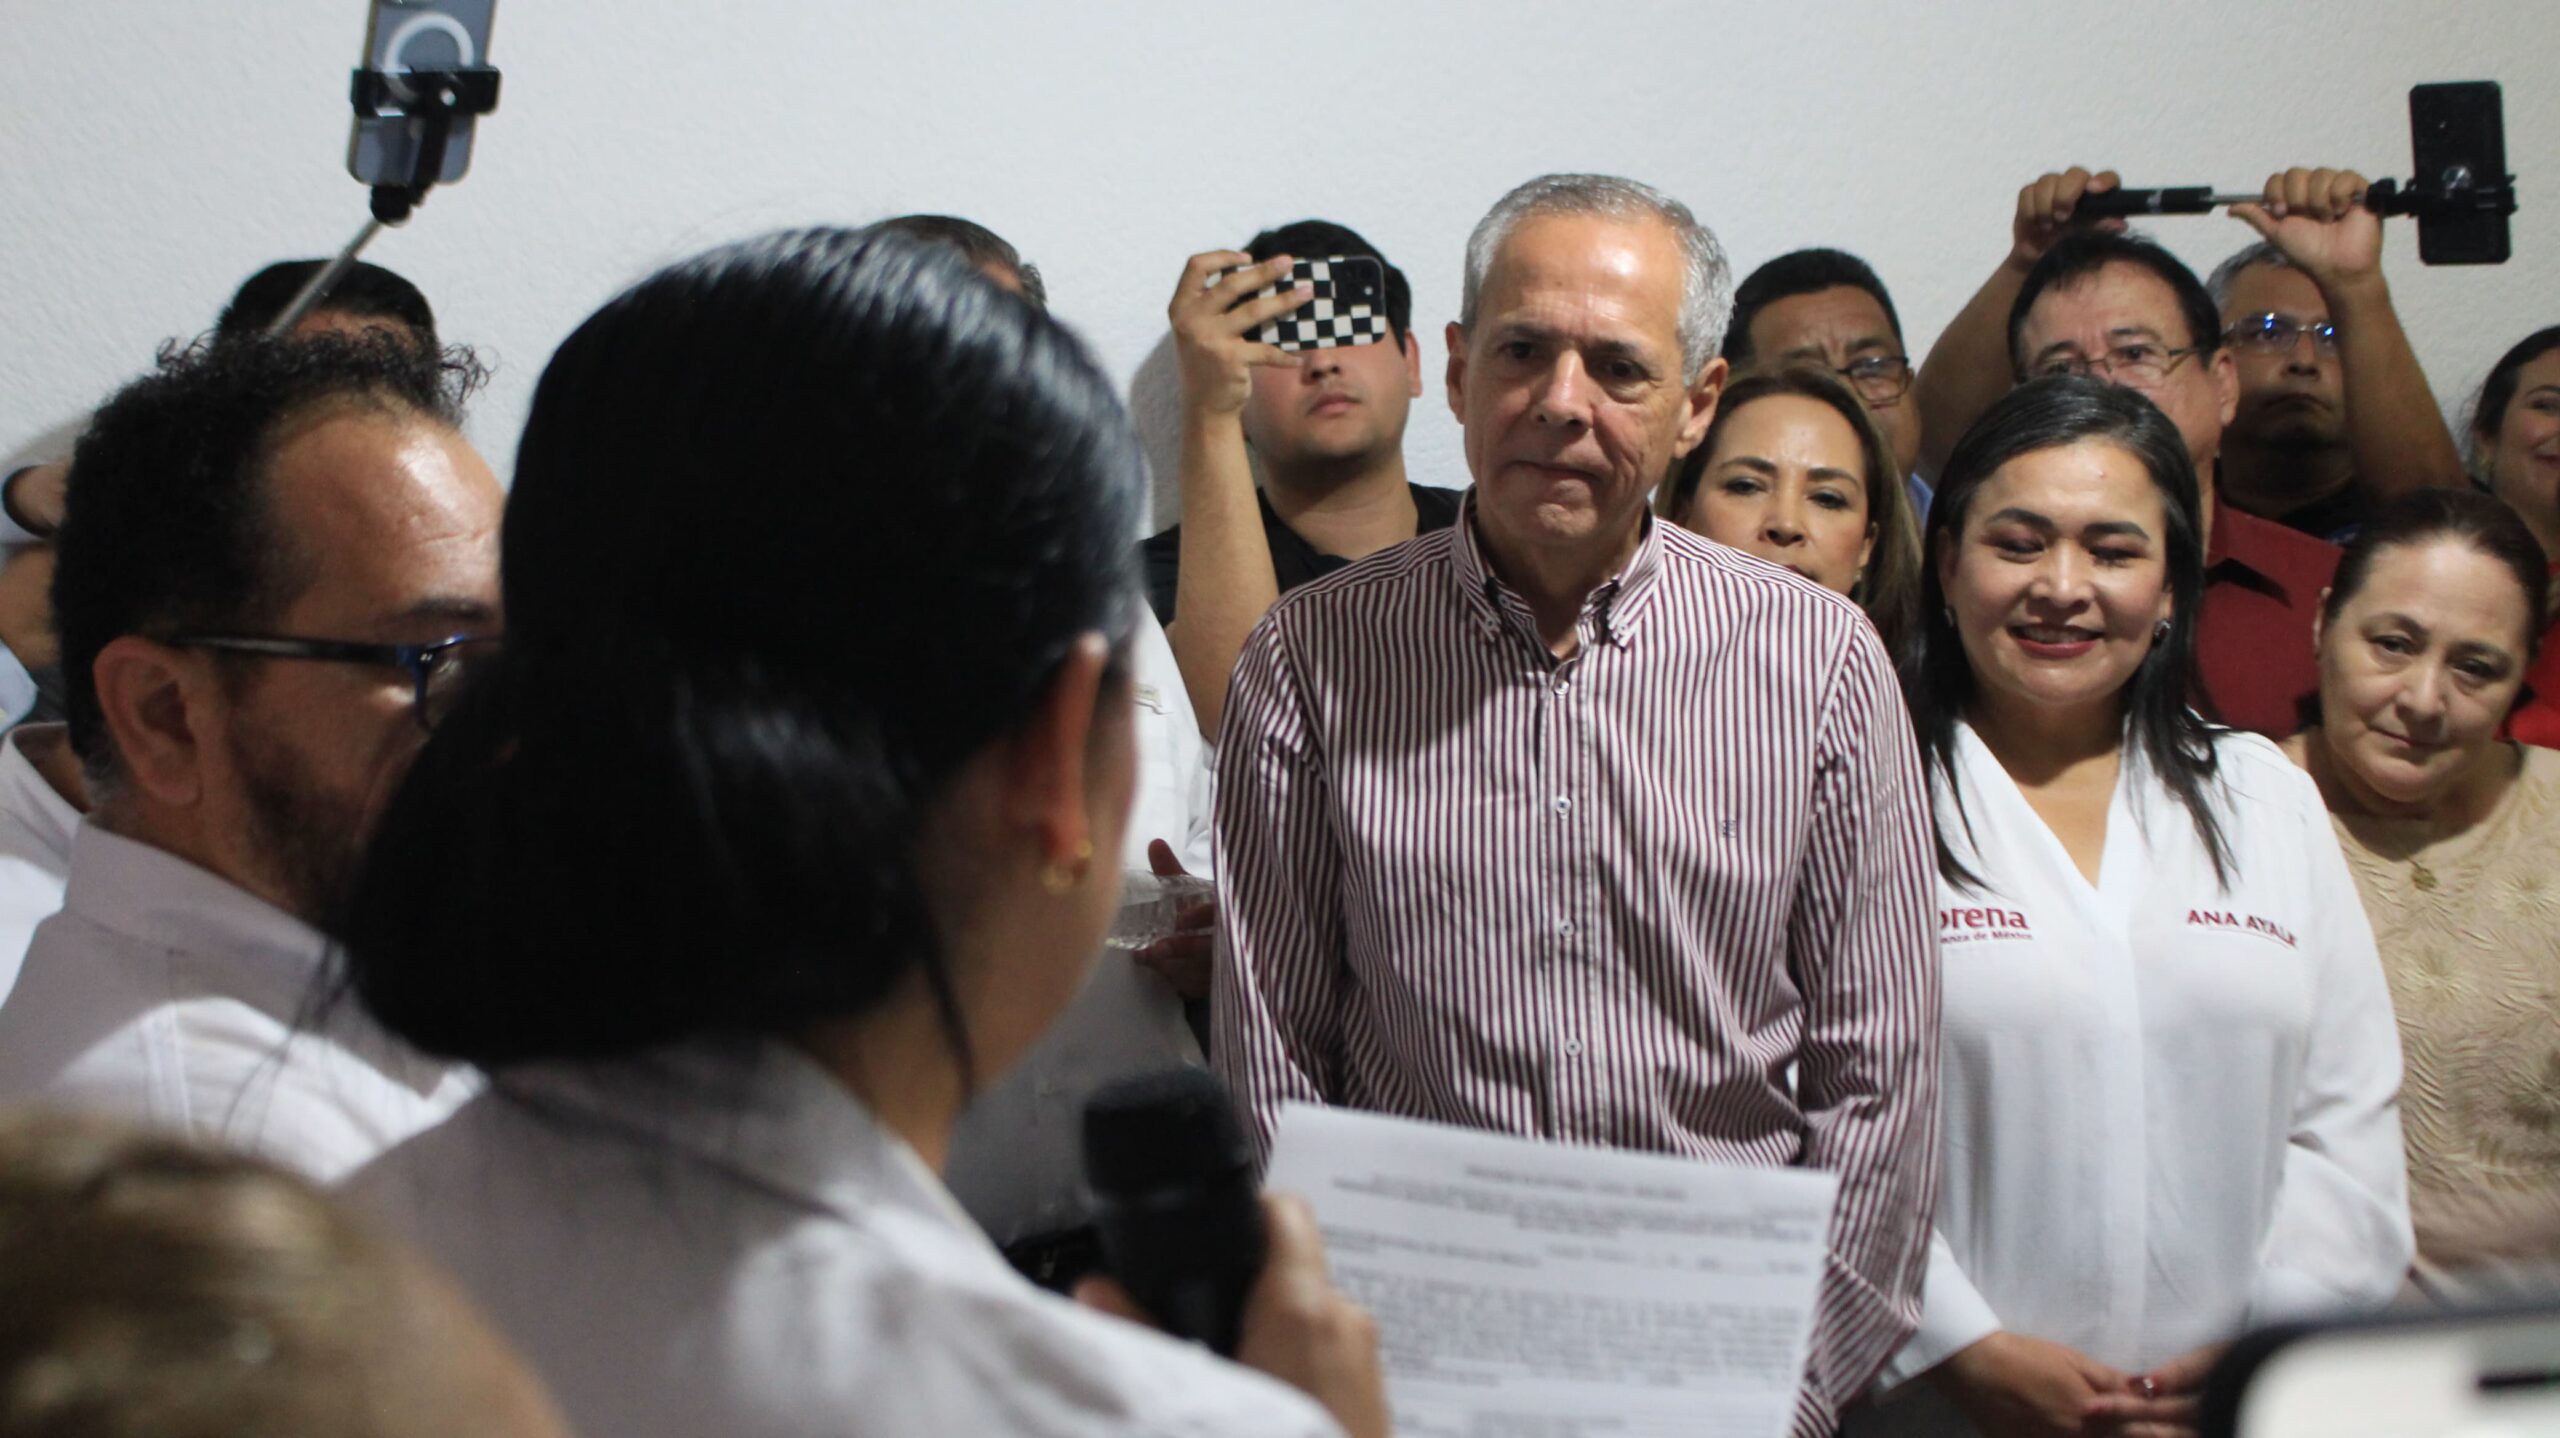 Gerardo Vargas Landeros candidato oficial a contender por la Alcaldía de Ahome